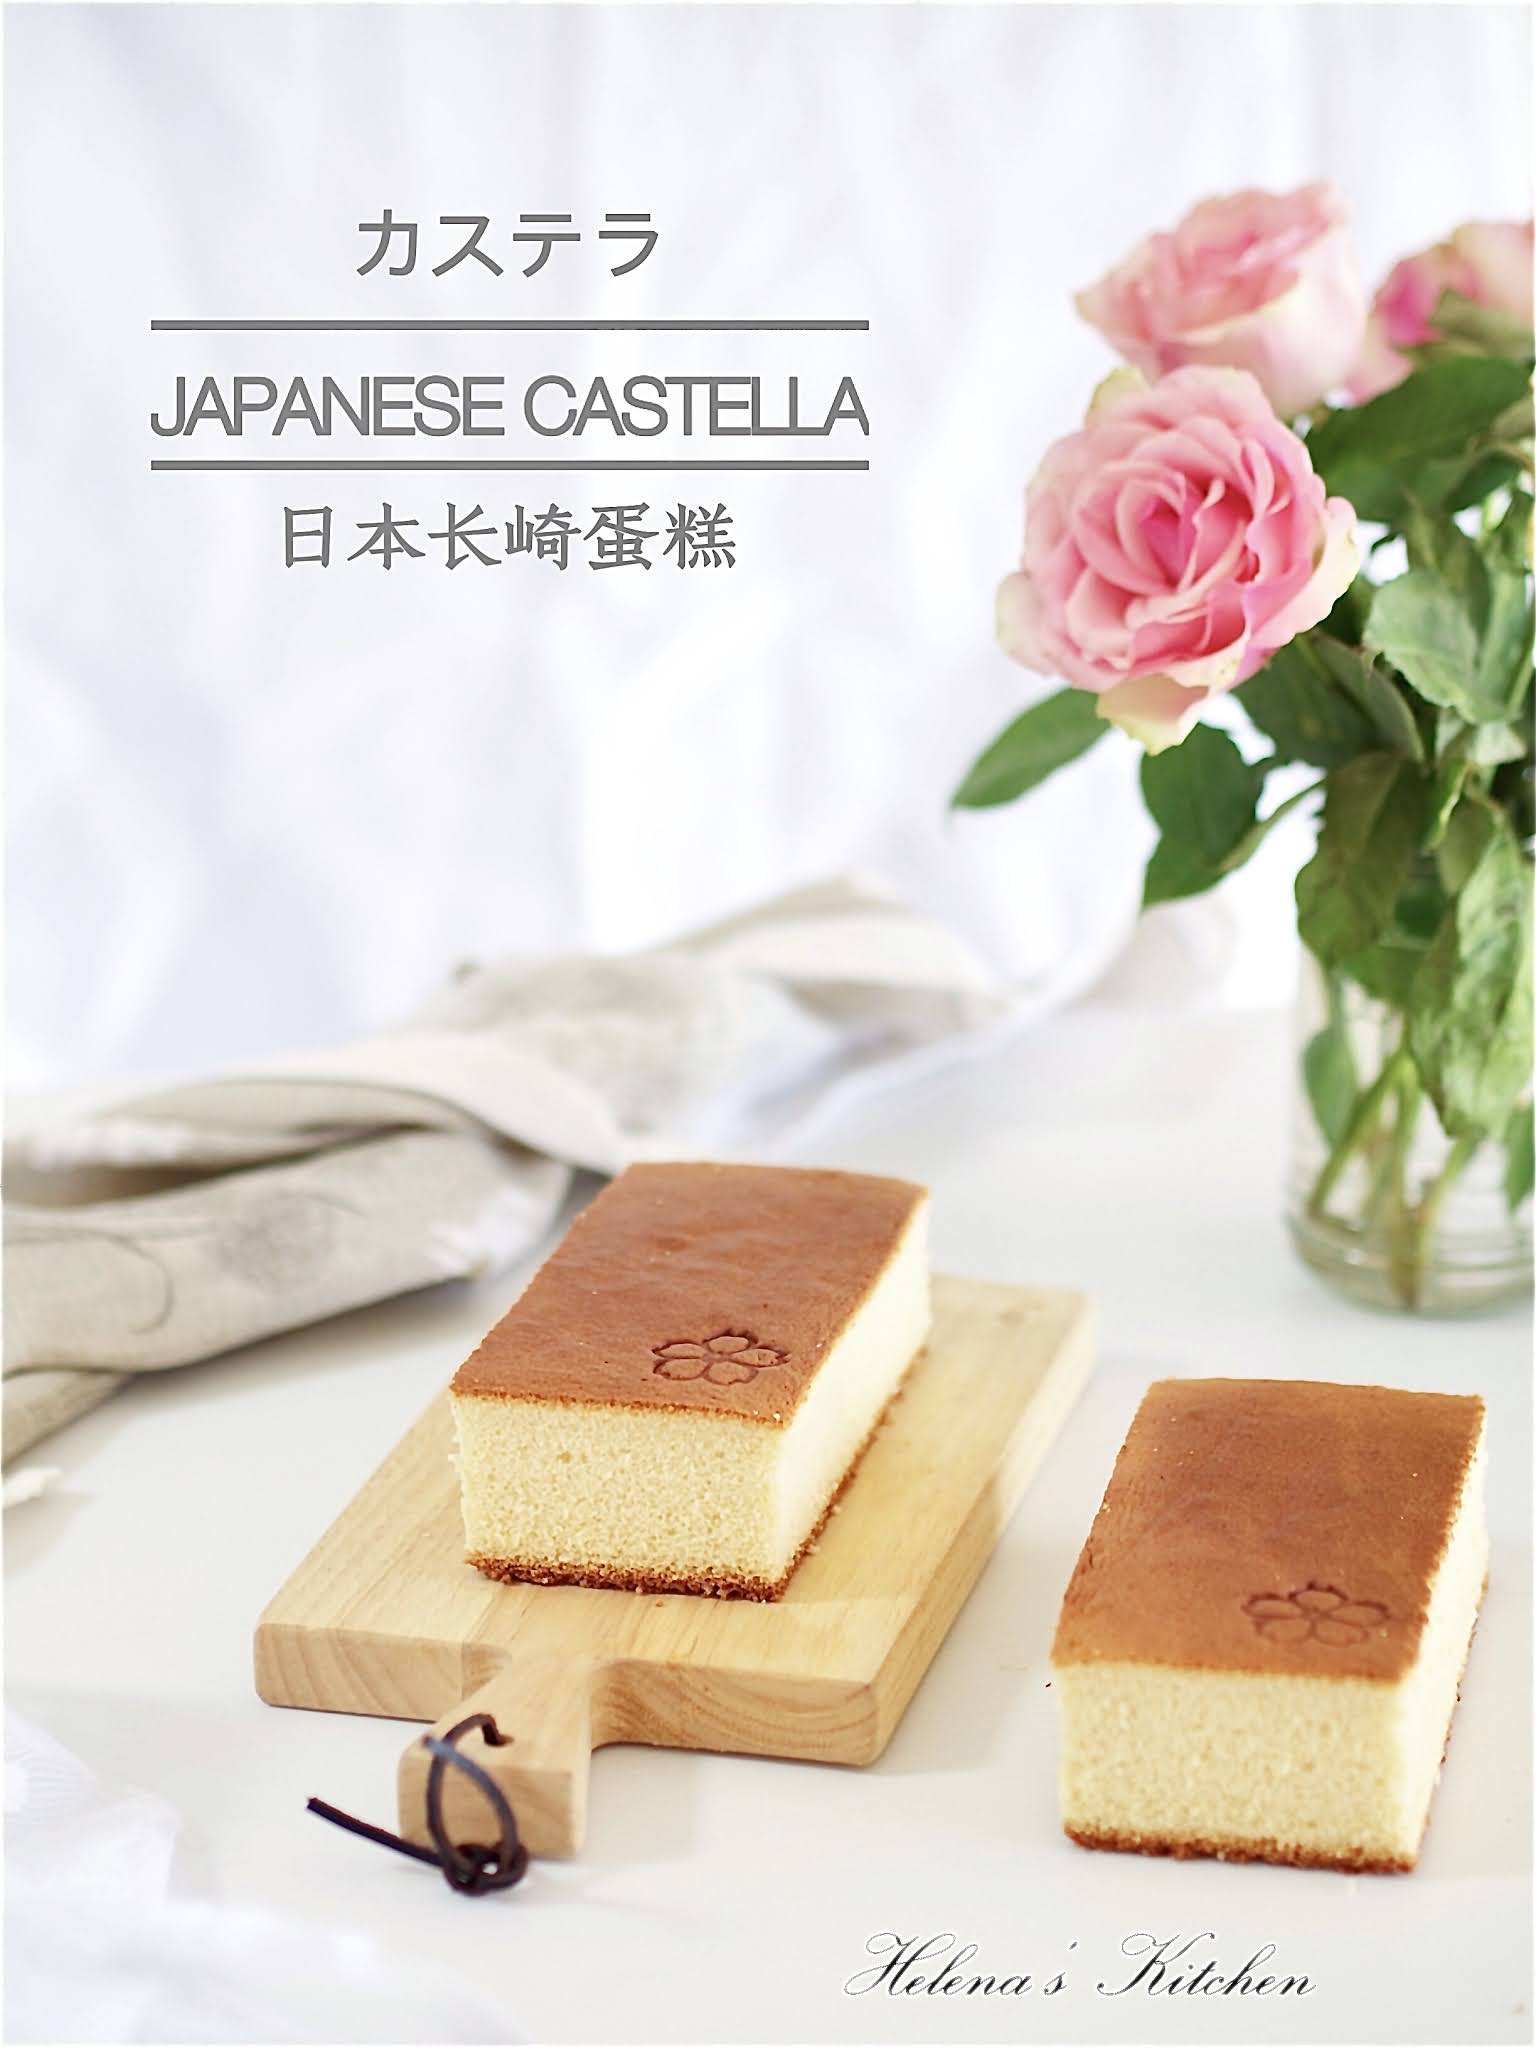 日式卡斯提拉长崎蜂蜜蛋糕 ，福砂屋百年经典美味_美食圈_生活_bilibili_哔哩哔哩